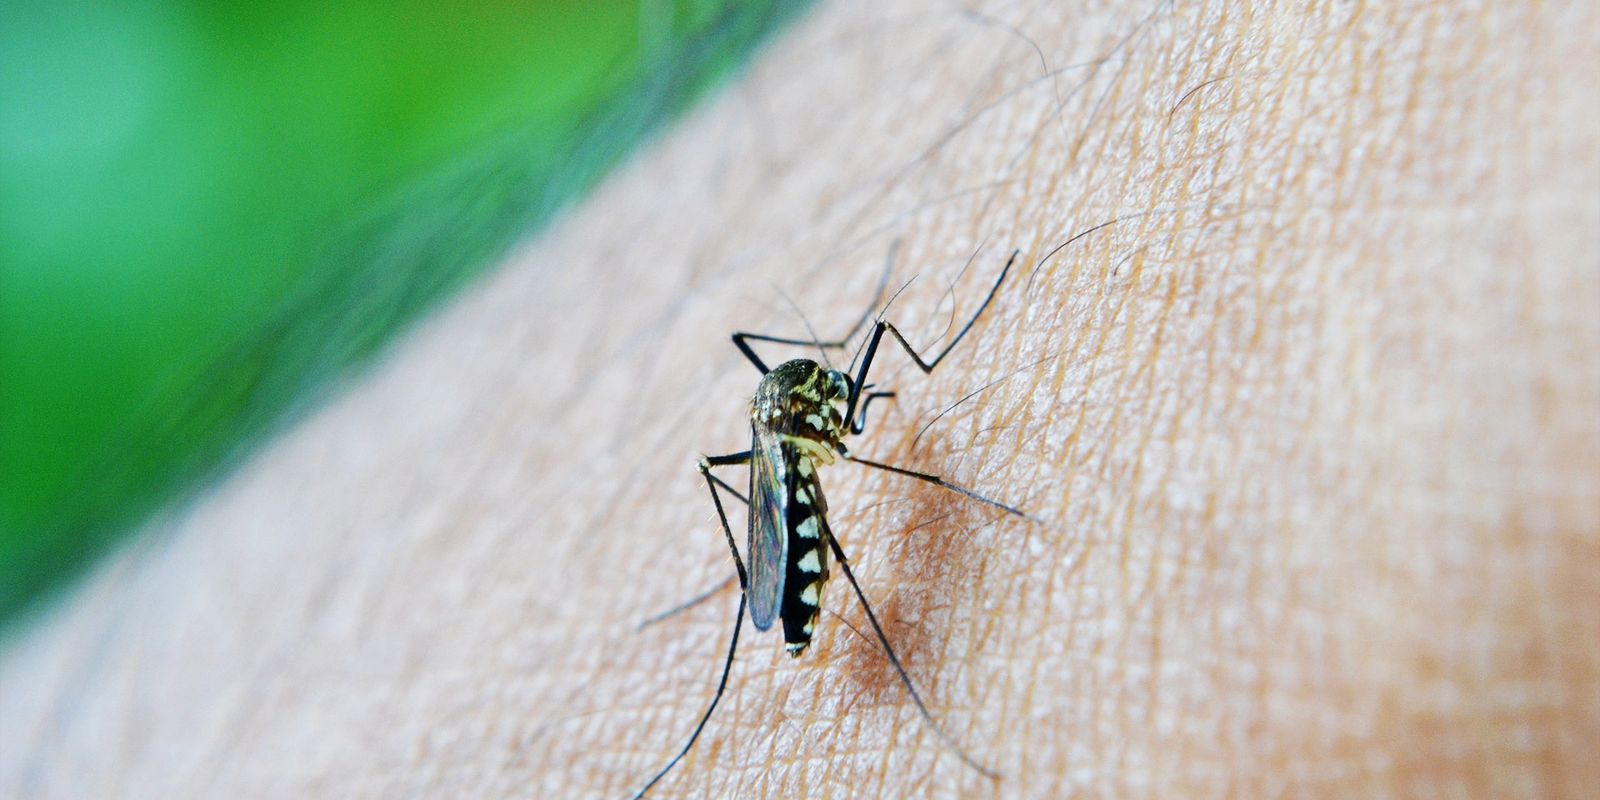 epidemia-de-dengue-faz-natal-decretar-emergencia-em-saude